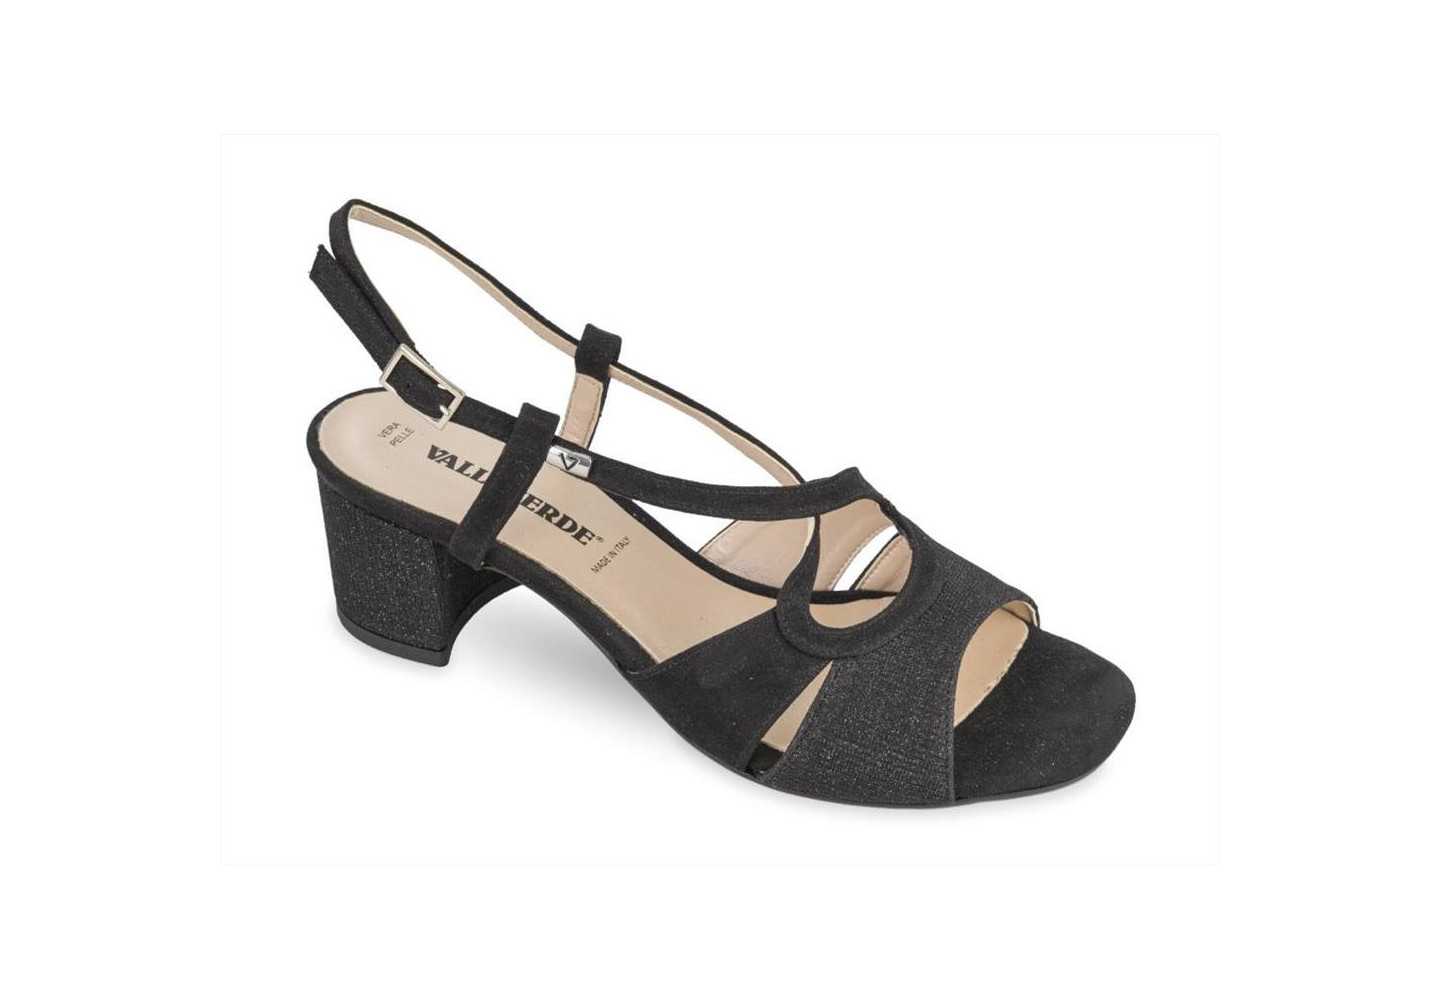 Sandalo elegante con tacco a blocchetto Valleverde 28216 nero